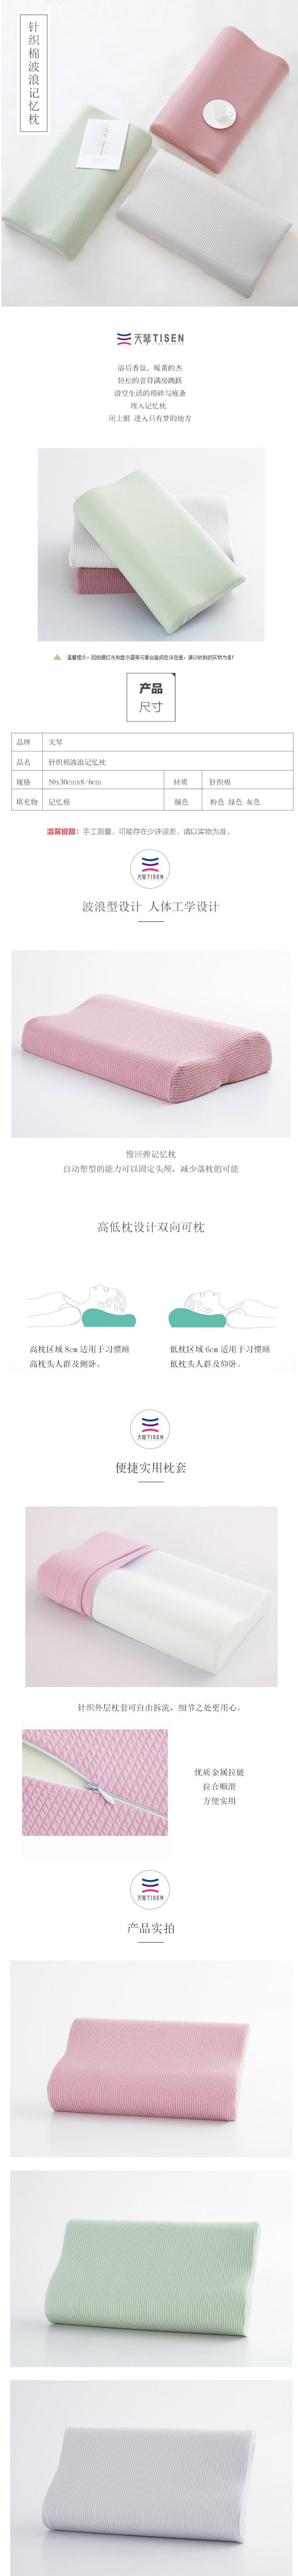 天琴 针织棉波浪记忆枕TQ-J61 50_30cm【图片 价格 品牌 报价】-京东.png